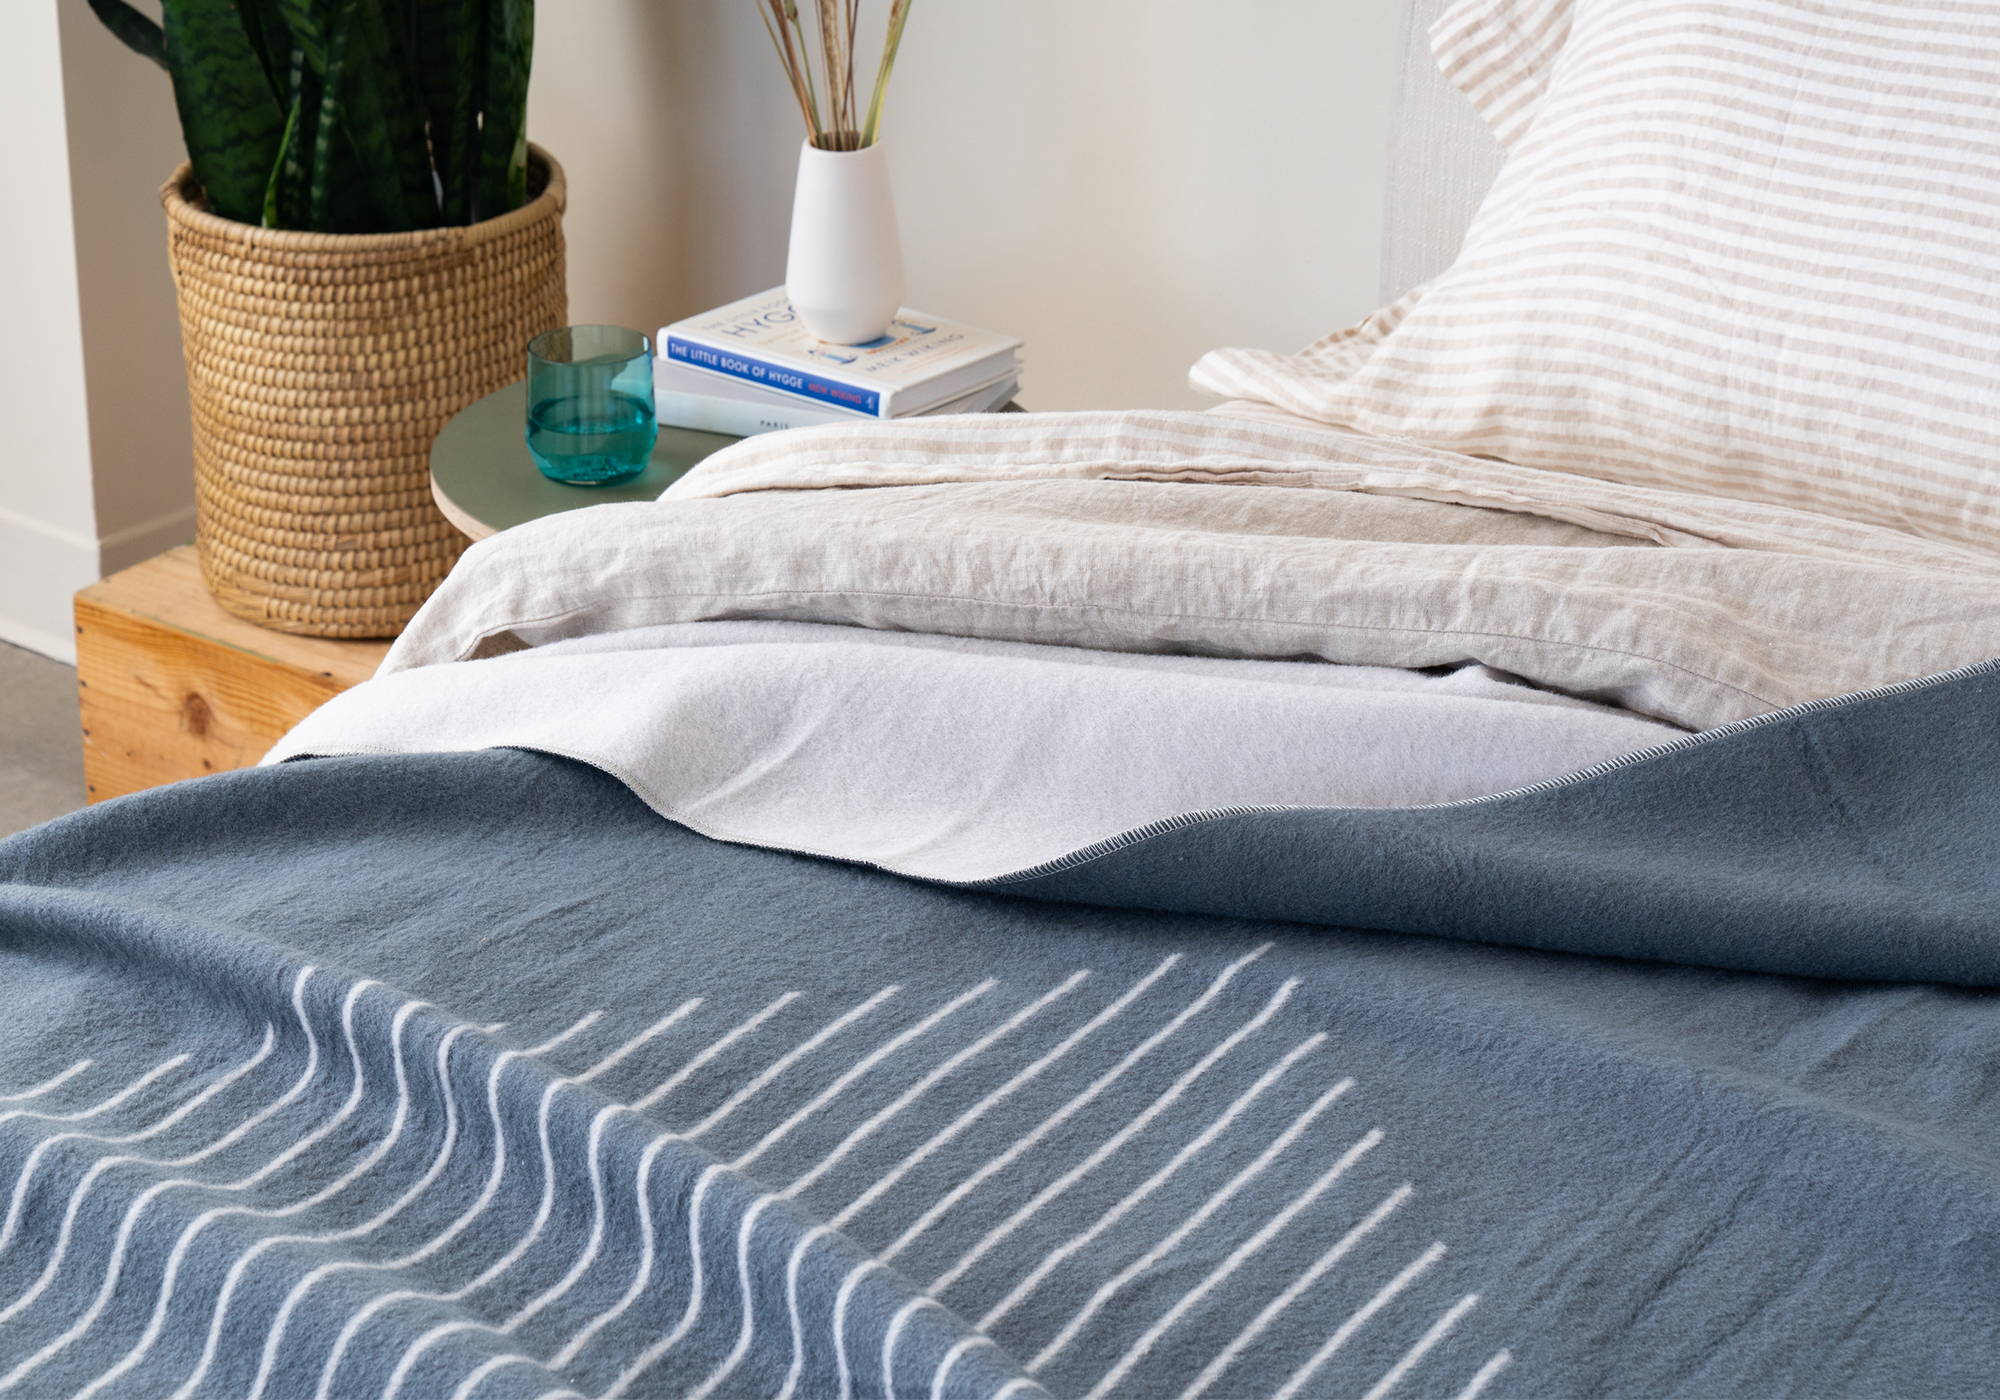 Merino Wool Blanket on Bed